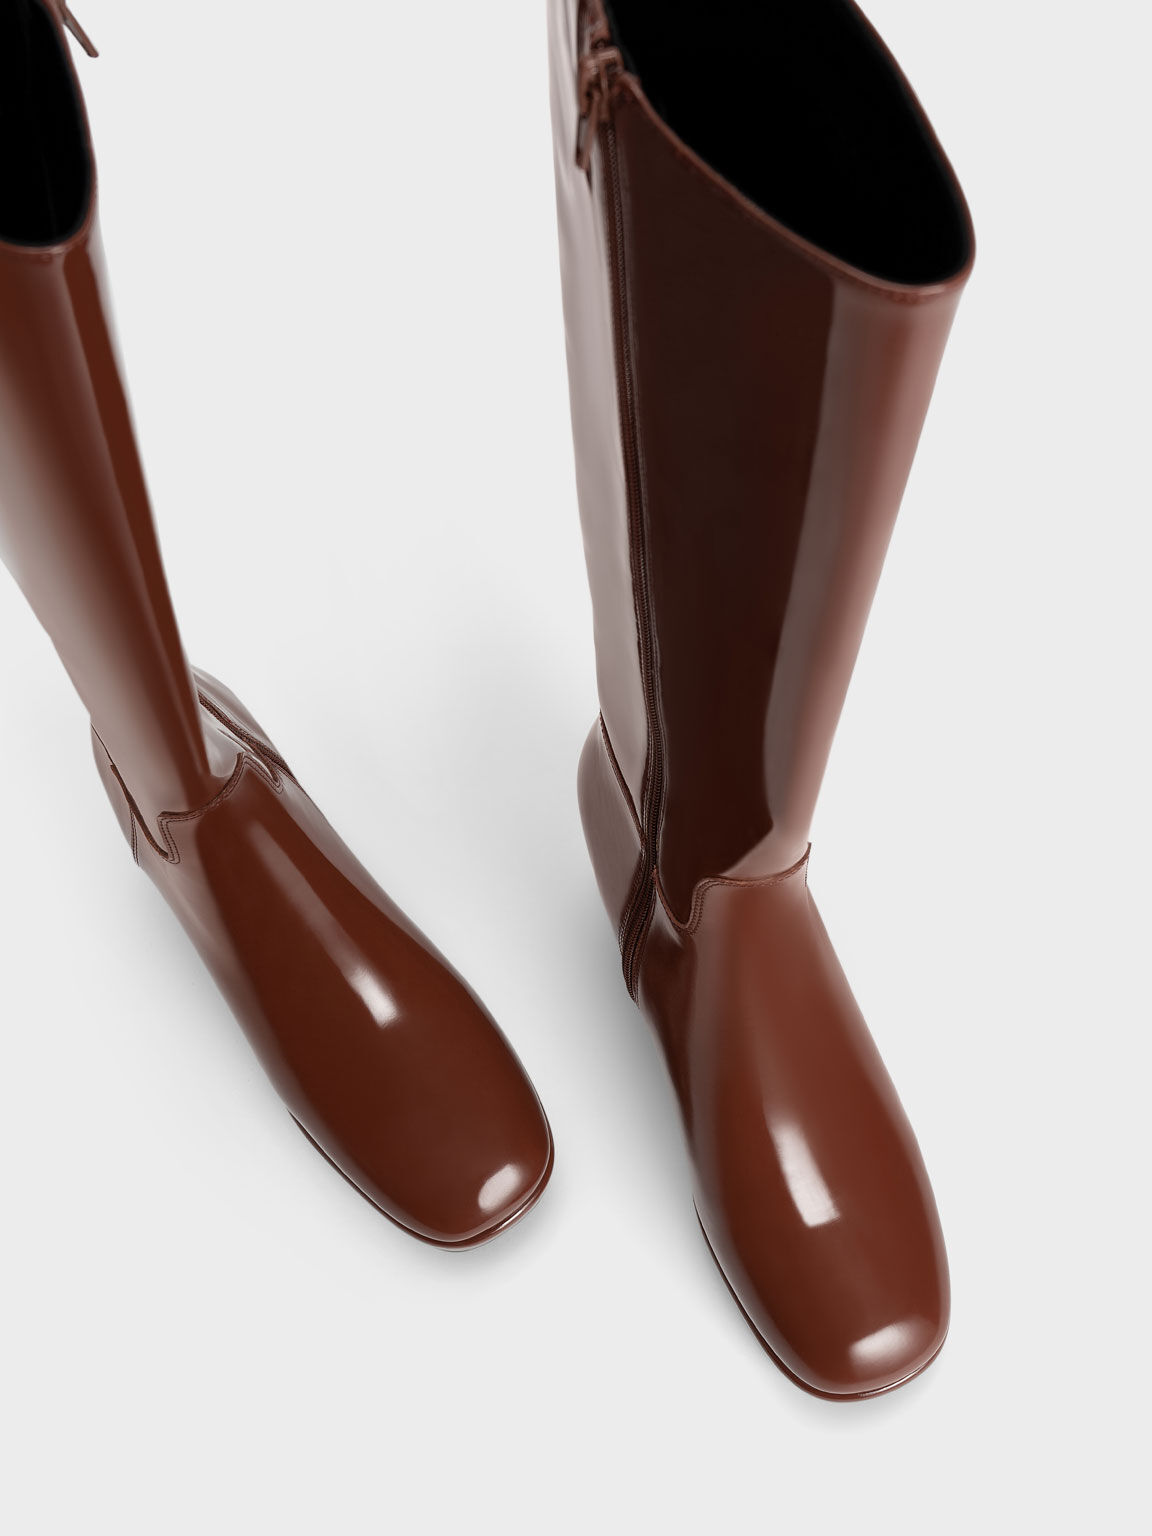 Patent Platform Knee-High Boots, Cognac, hi-res